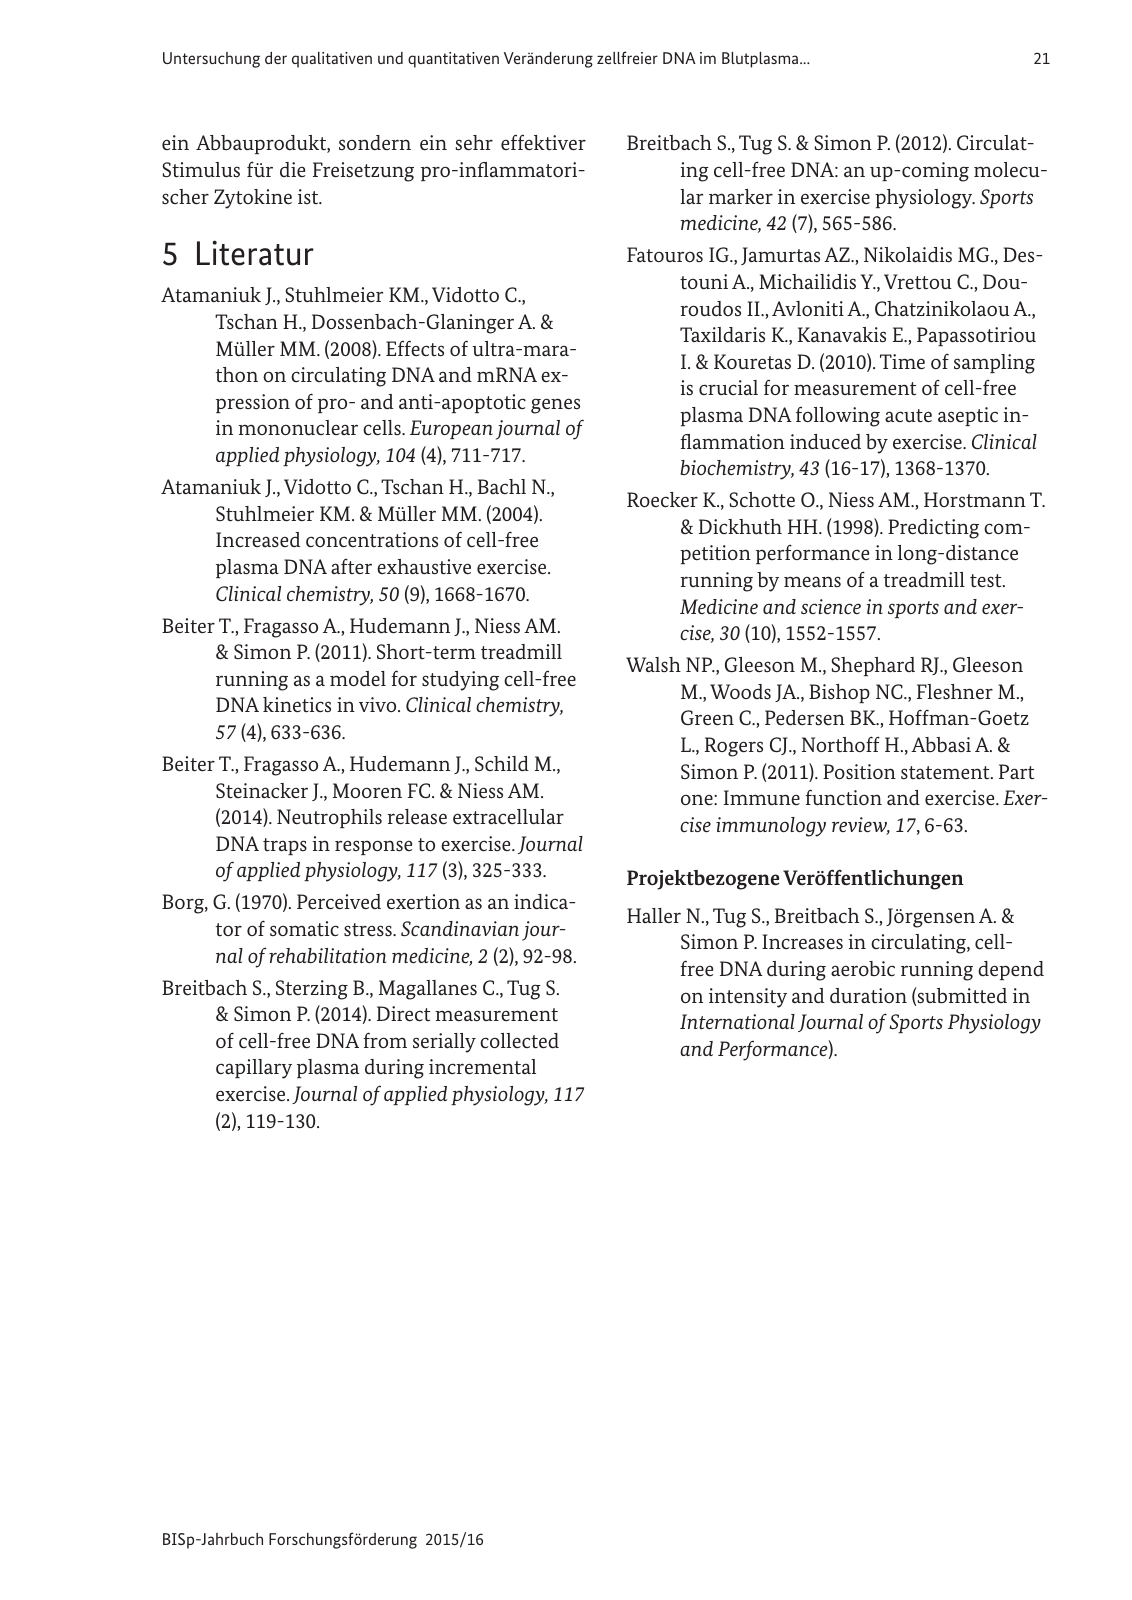 Vorschau BISp-Jahrbuch Forschungsförderung 2015/16 Seite 23